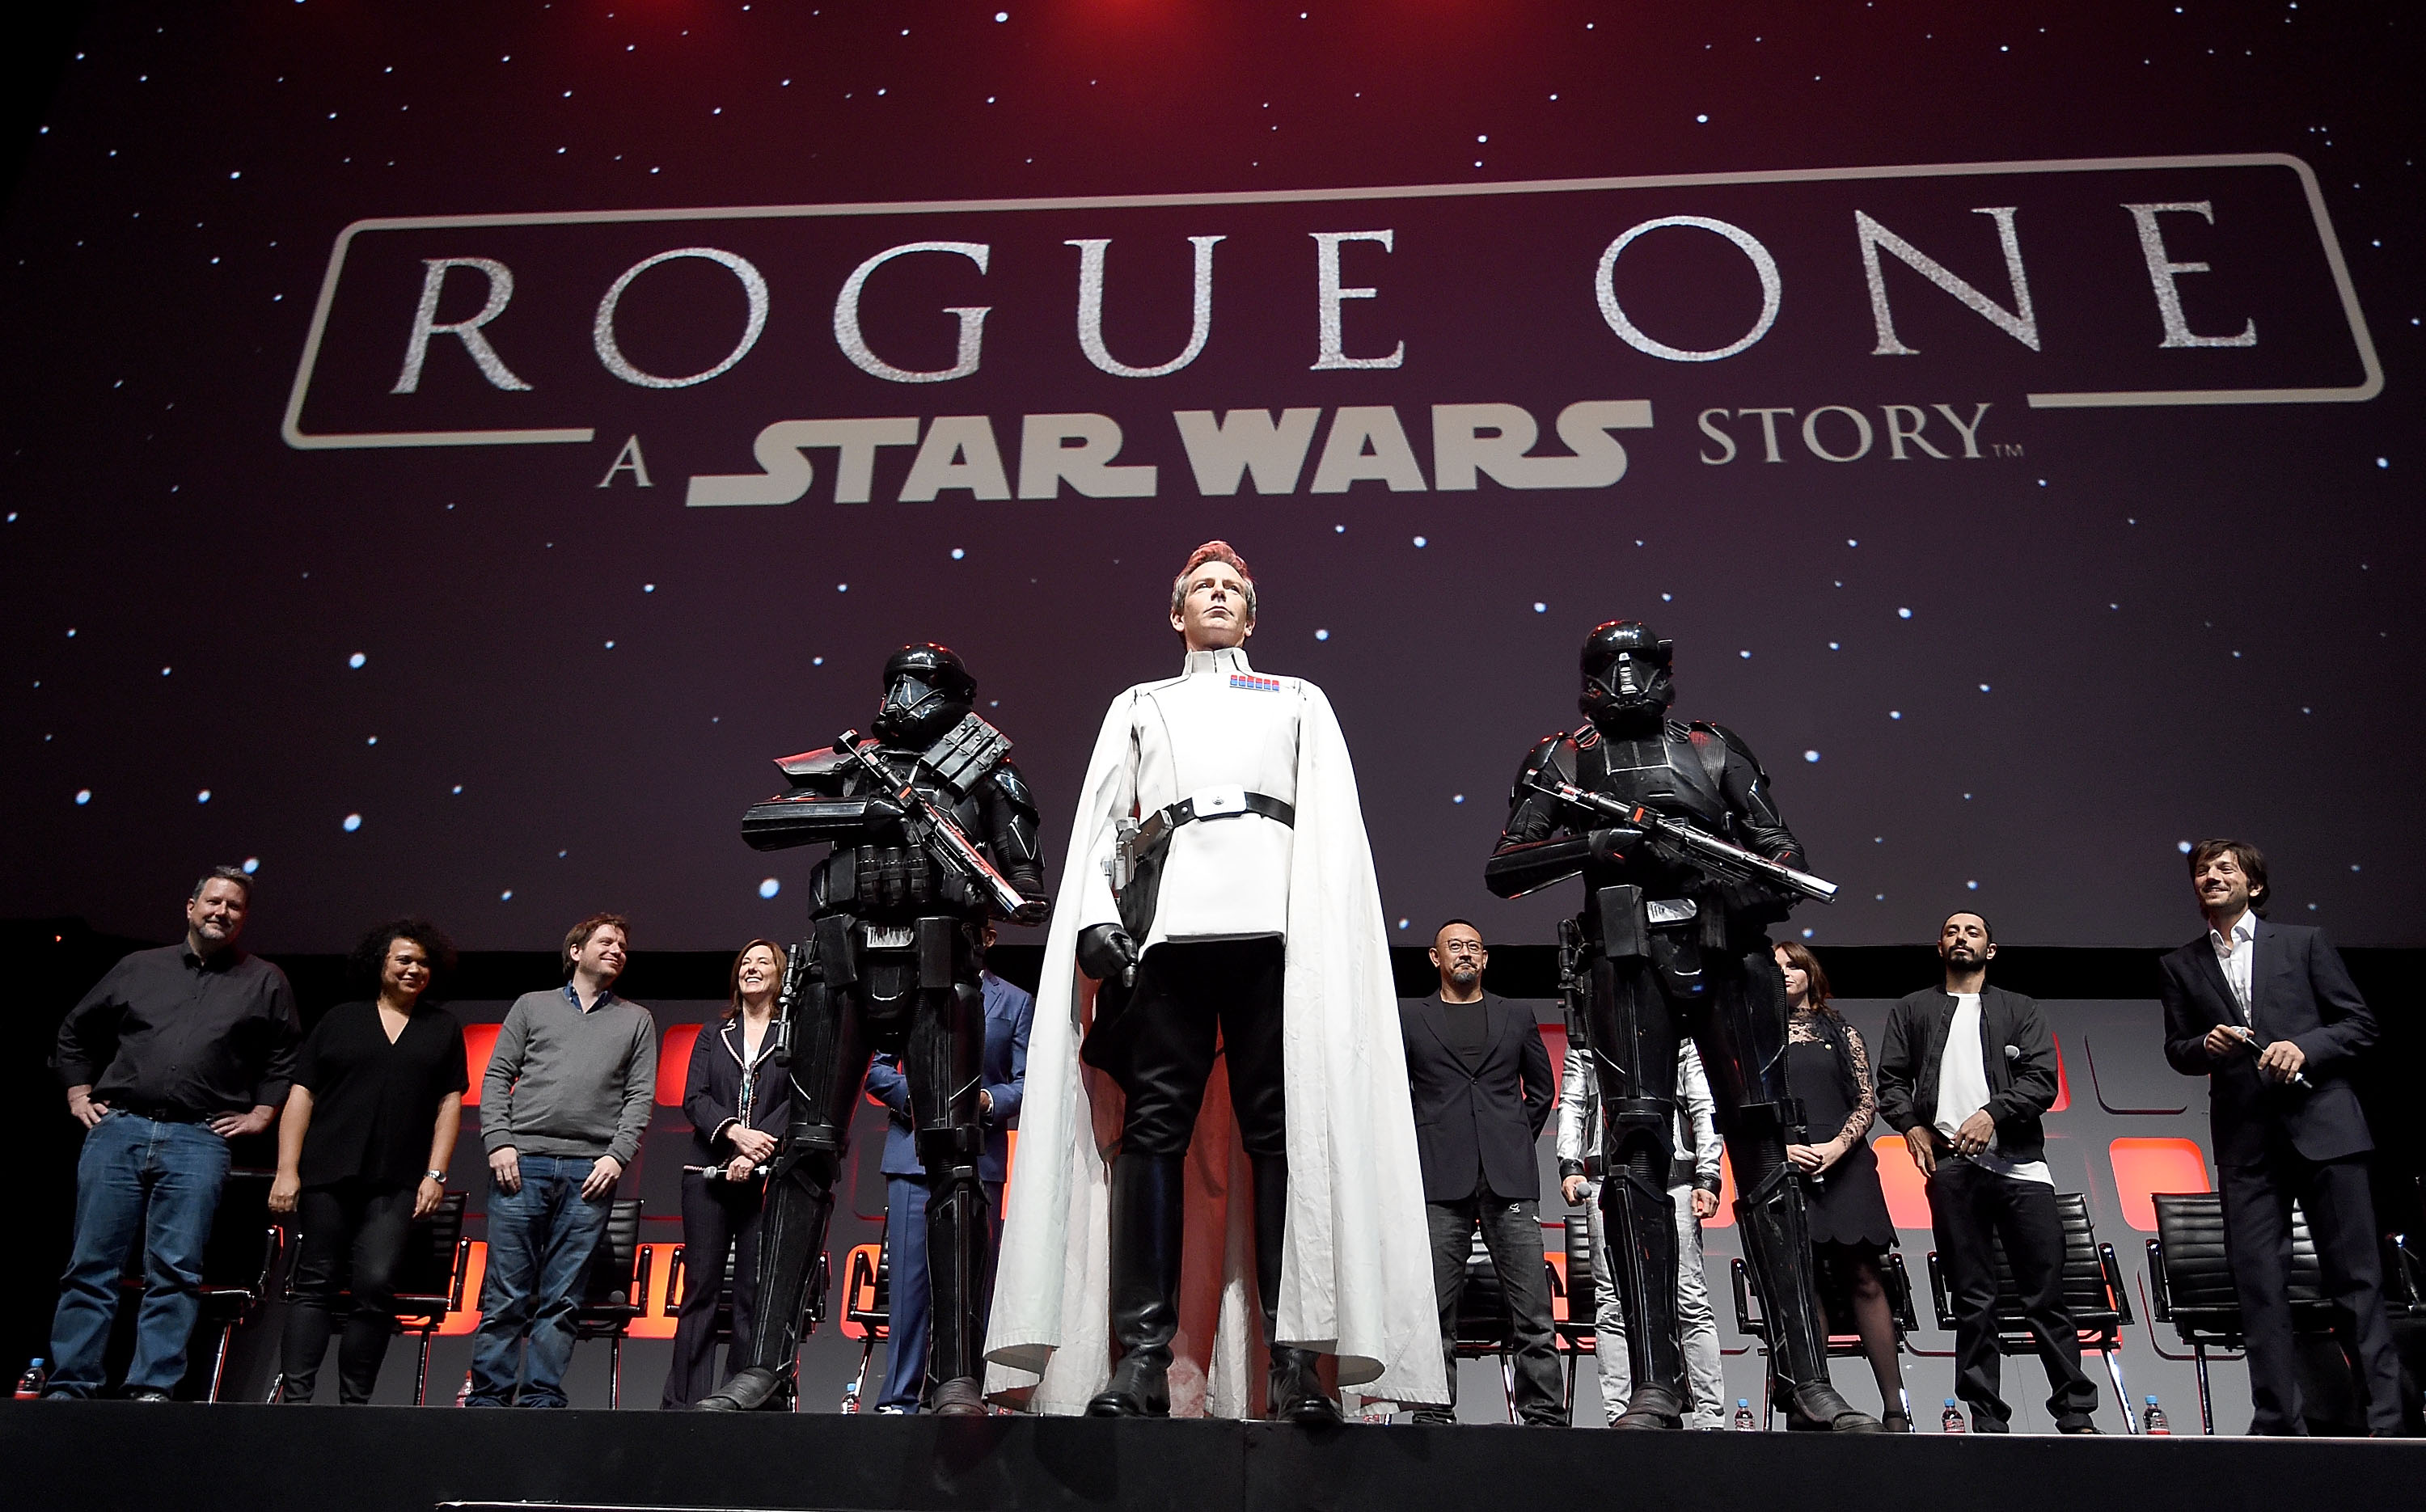 Rogue One Star Wars Online 2016 Bluray Watch